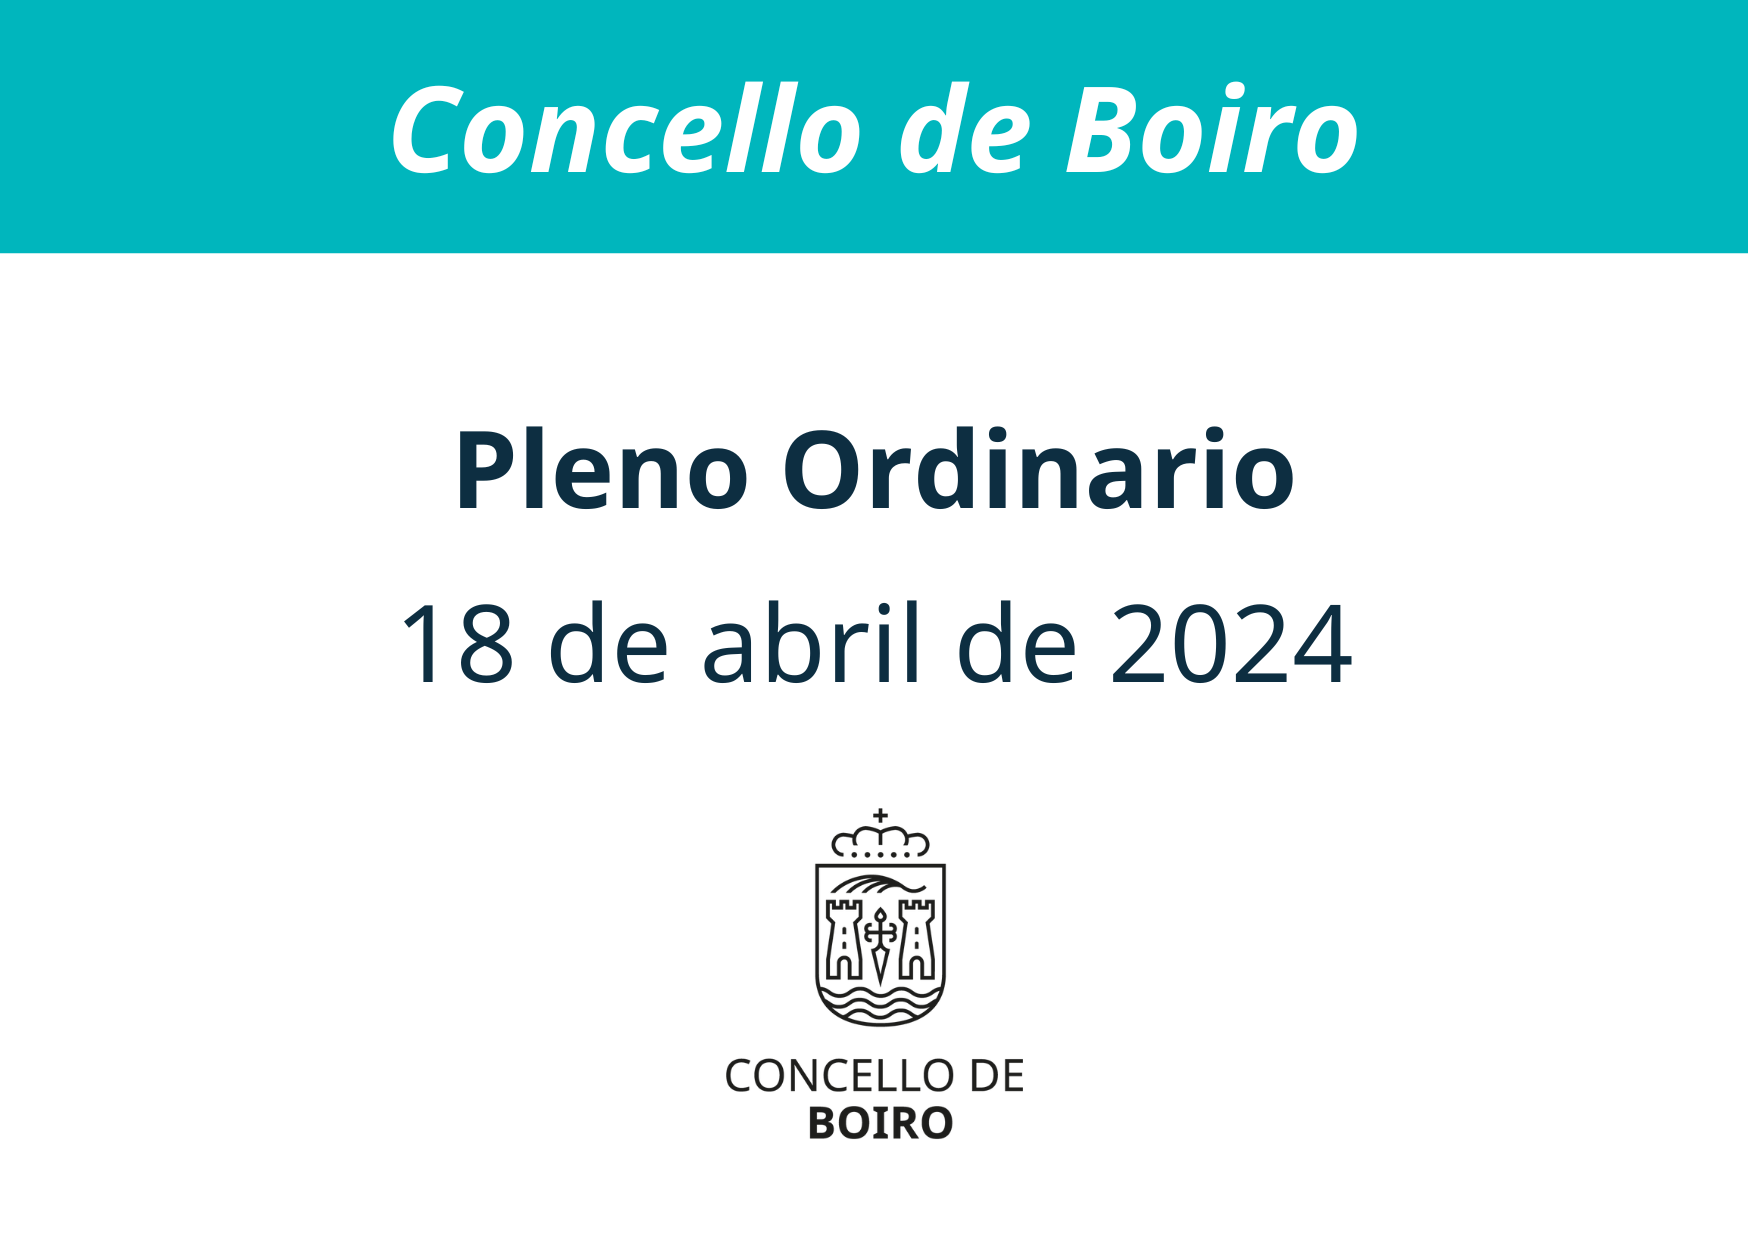 Pleno ordinario do 18 de abril de 2024 | Concello de Boiro